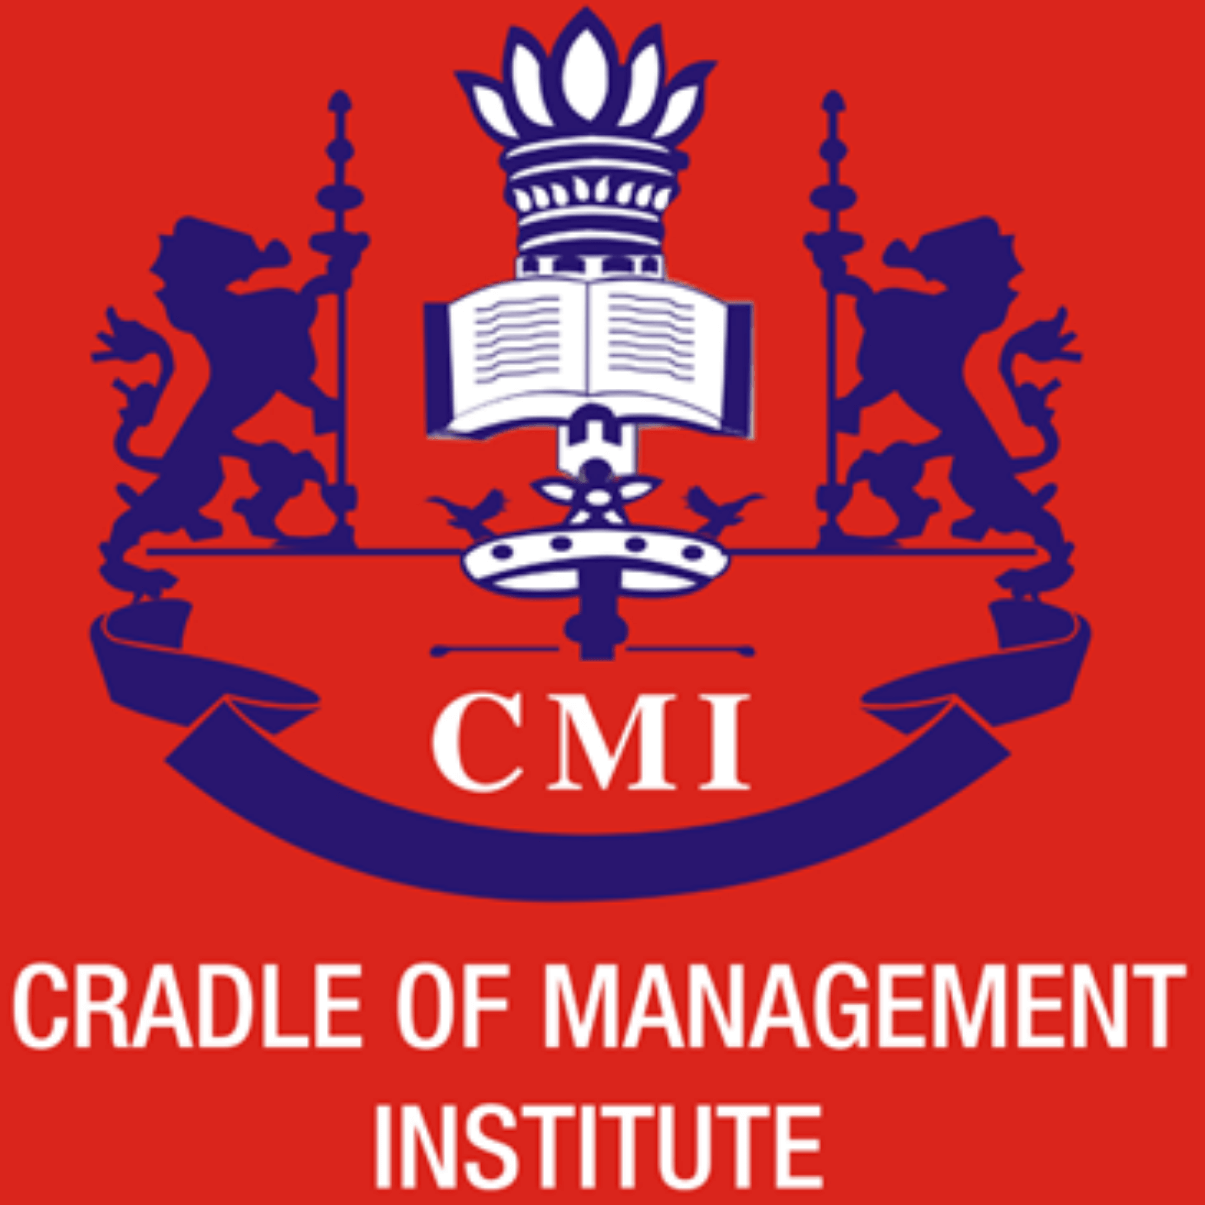 Cradle of Management Institute, New Delhi